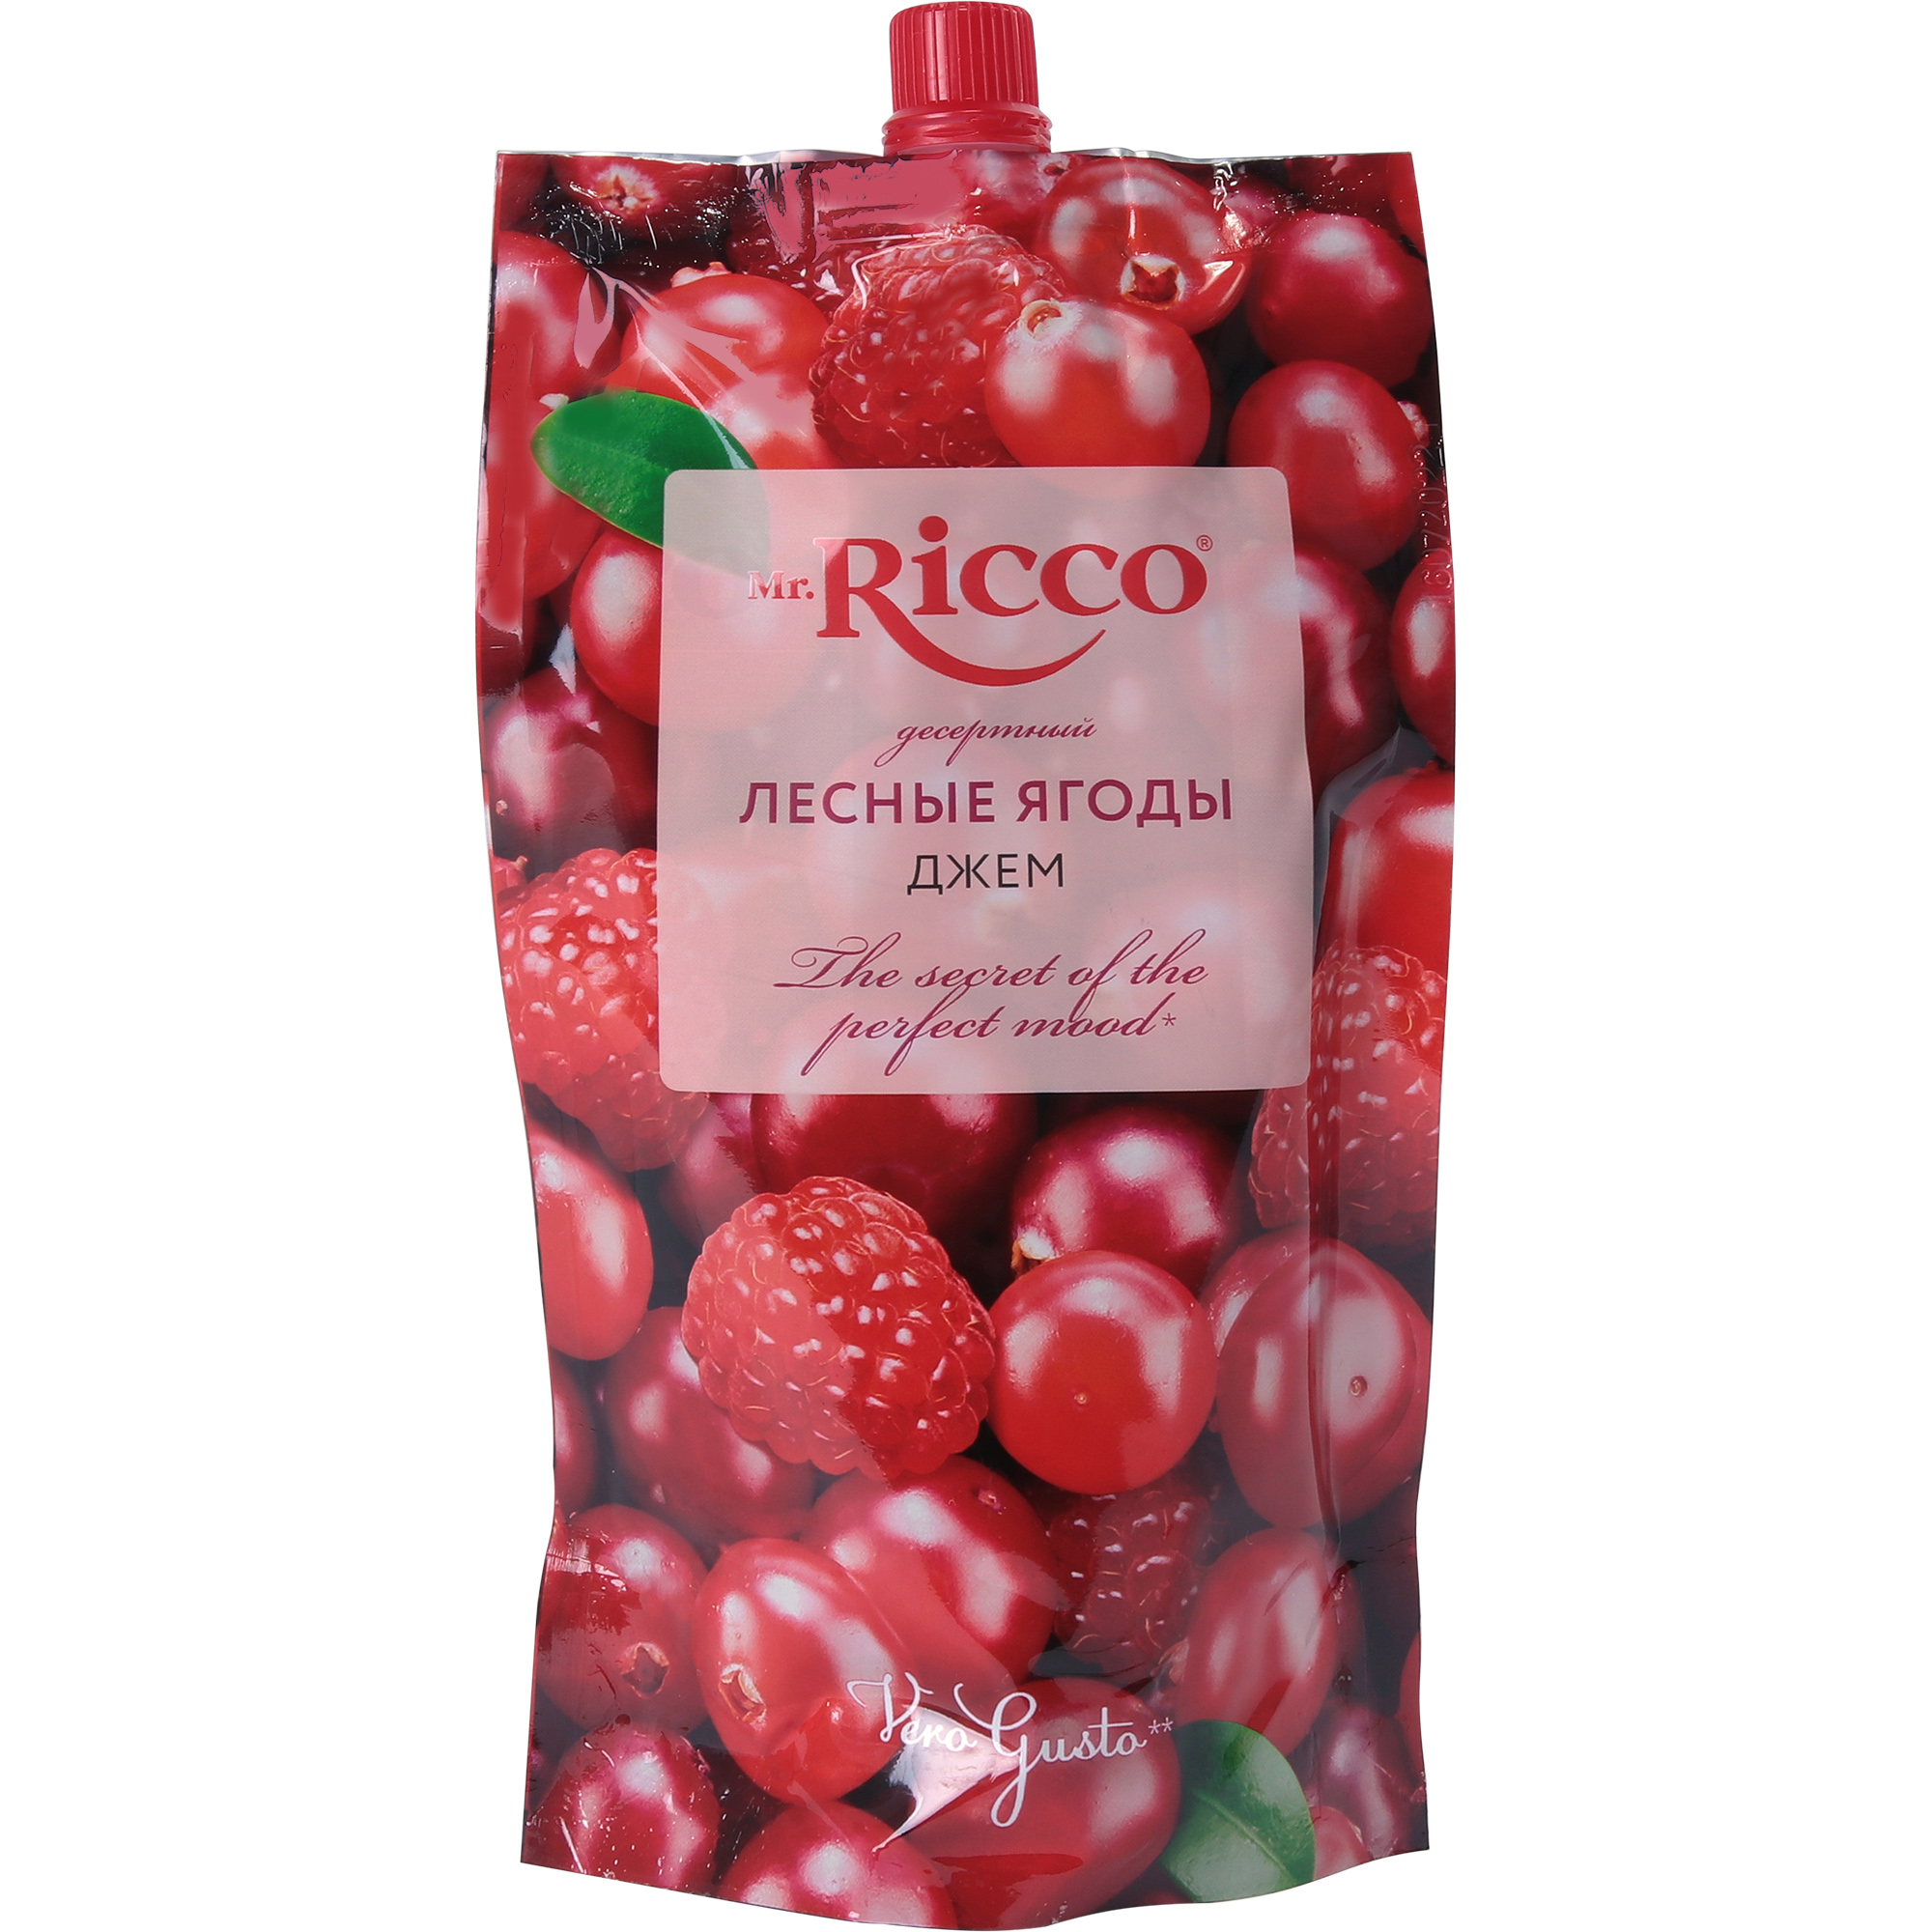 Джем Mr.Ricco лесные ягоды, 300 г